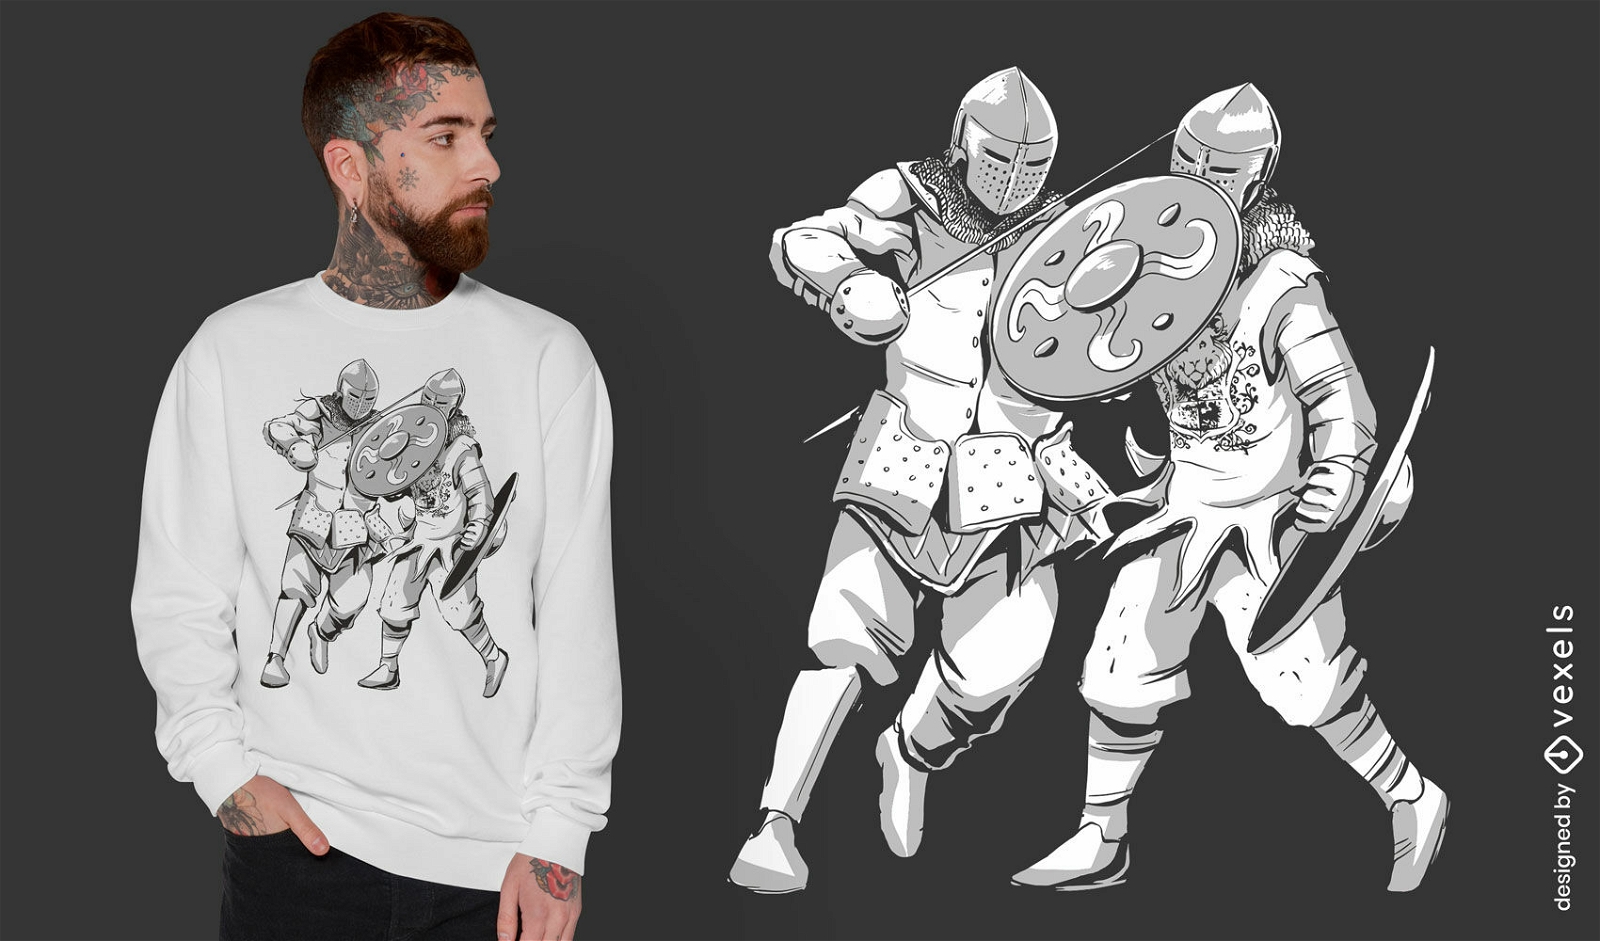 Diseño de camiseta de lucha de caballeros medievales.